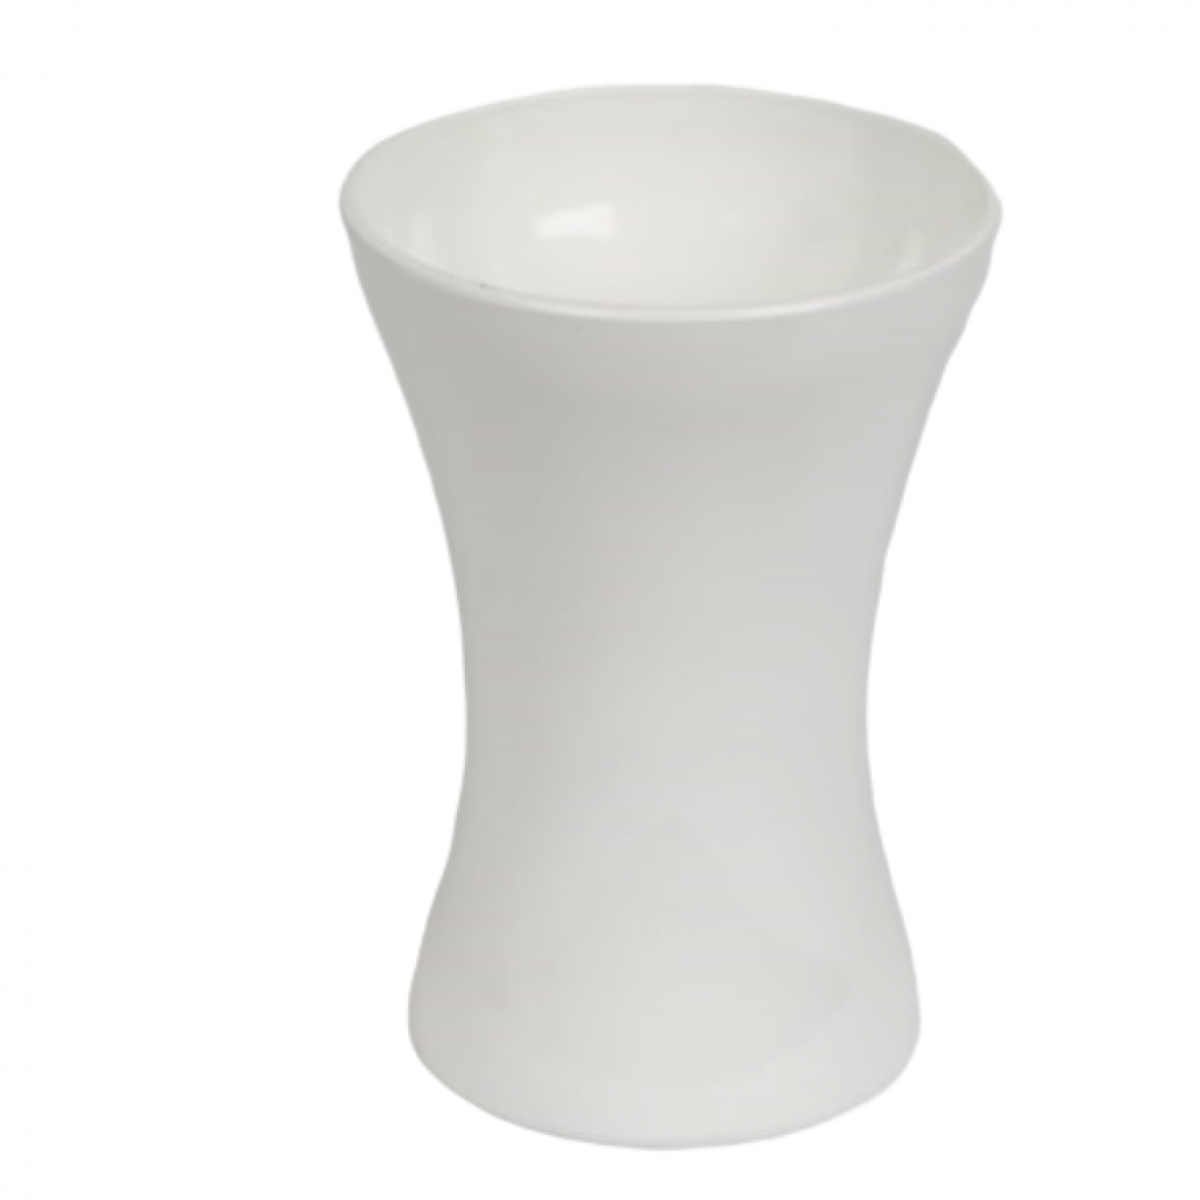 5122 Hantied White 14x20cm Acrylic Vase - 1 No